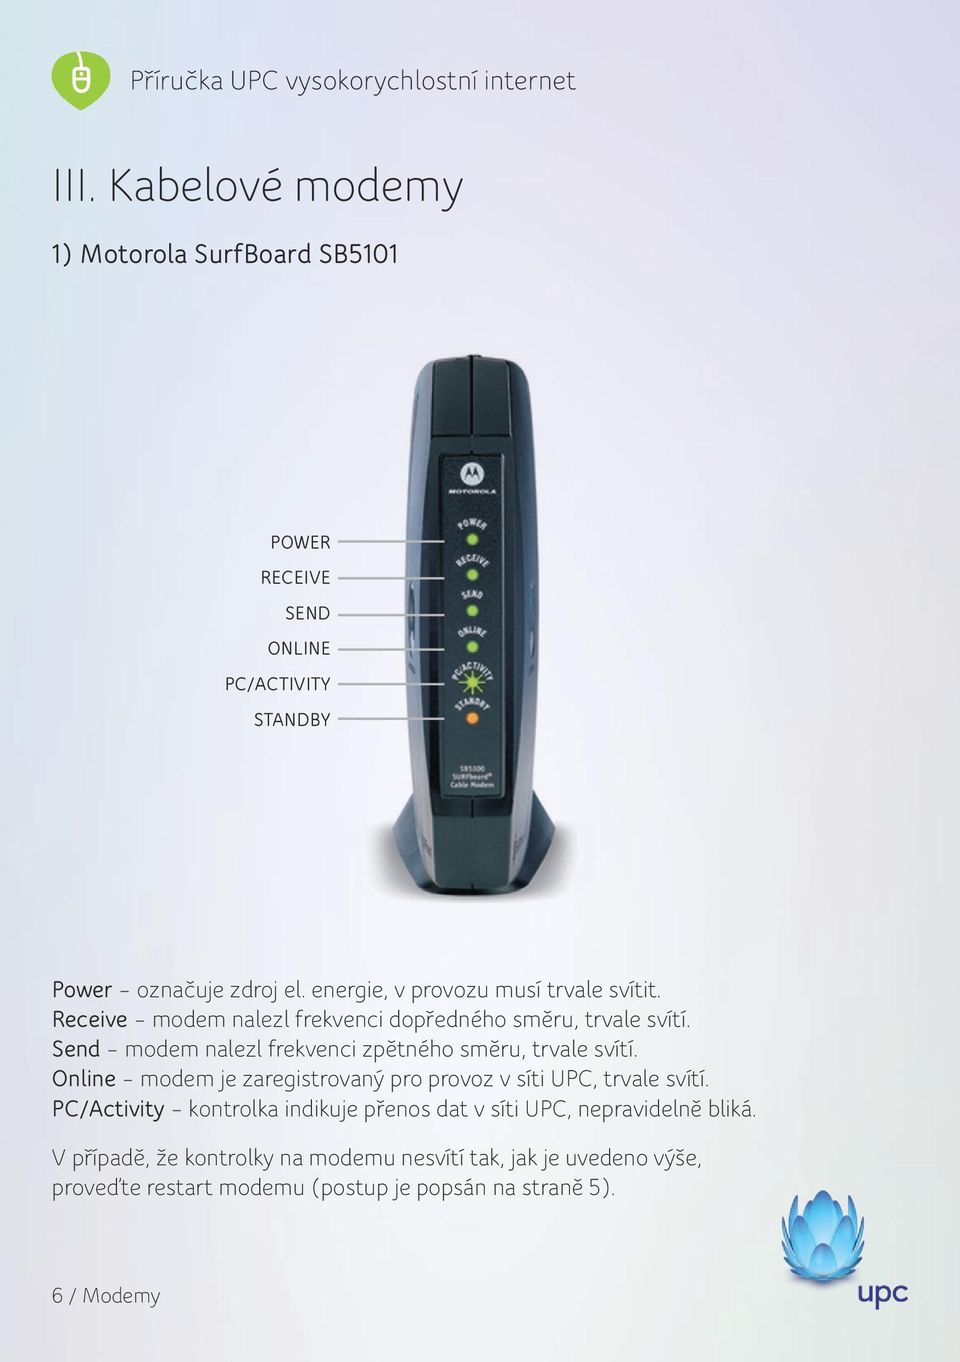 Send modem nalezl frekvenci zpětného směru, trvale svítí. Online modem je zaregistrovaný pro provoz v síti UPC, trvale svítí.